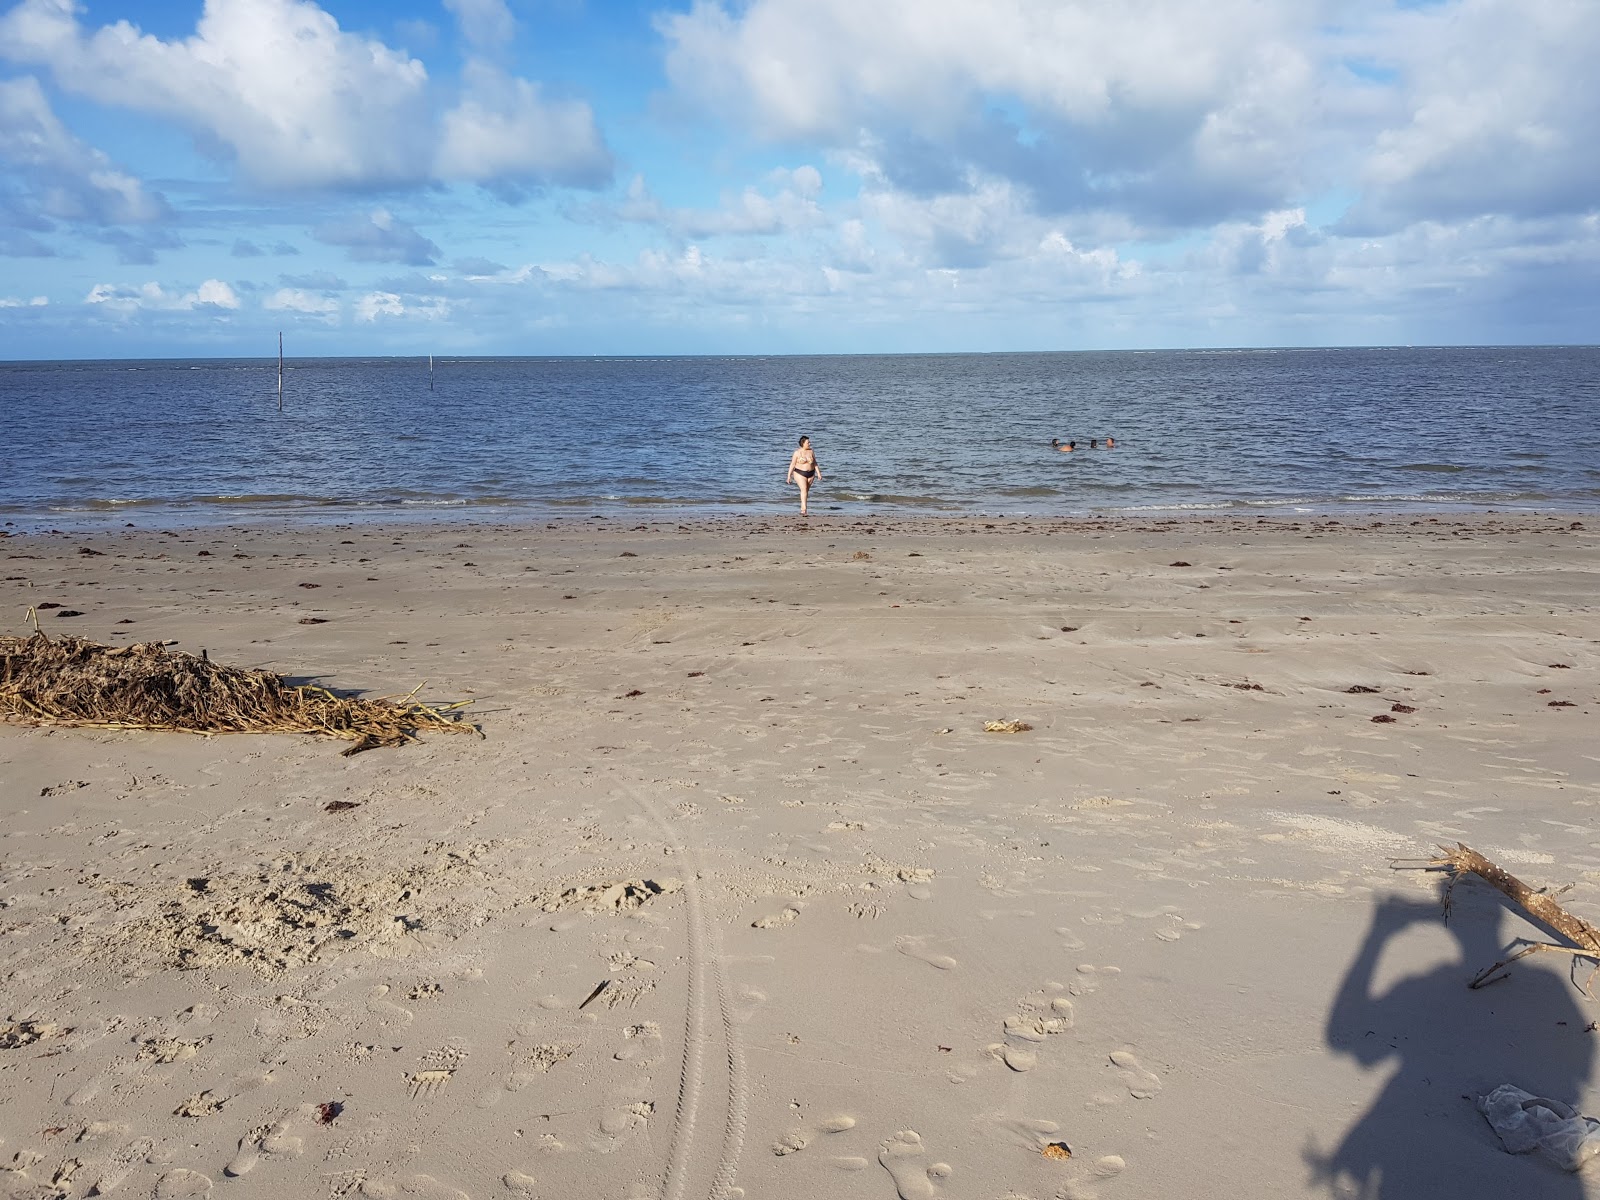 阿卡乌海滩的照片 带有碧绿色纯水表面